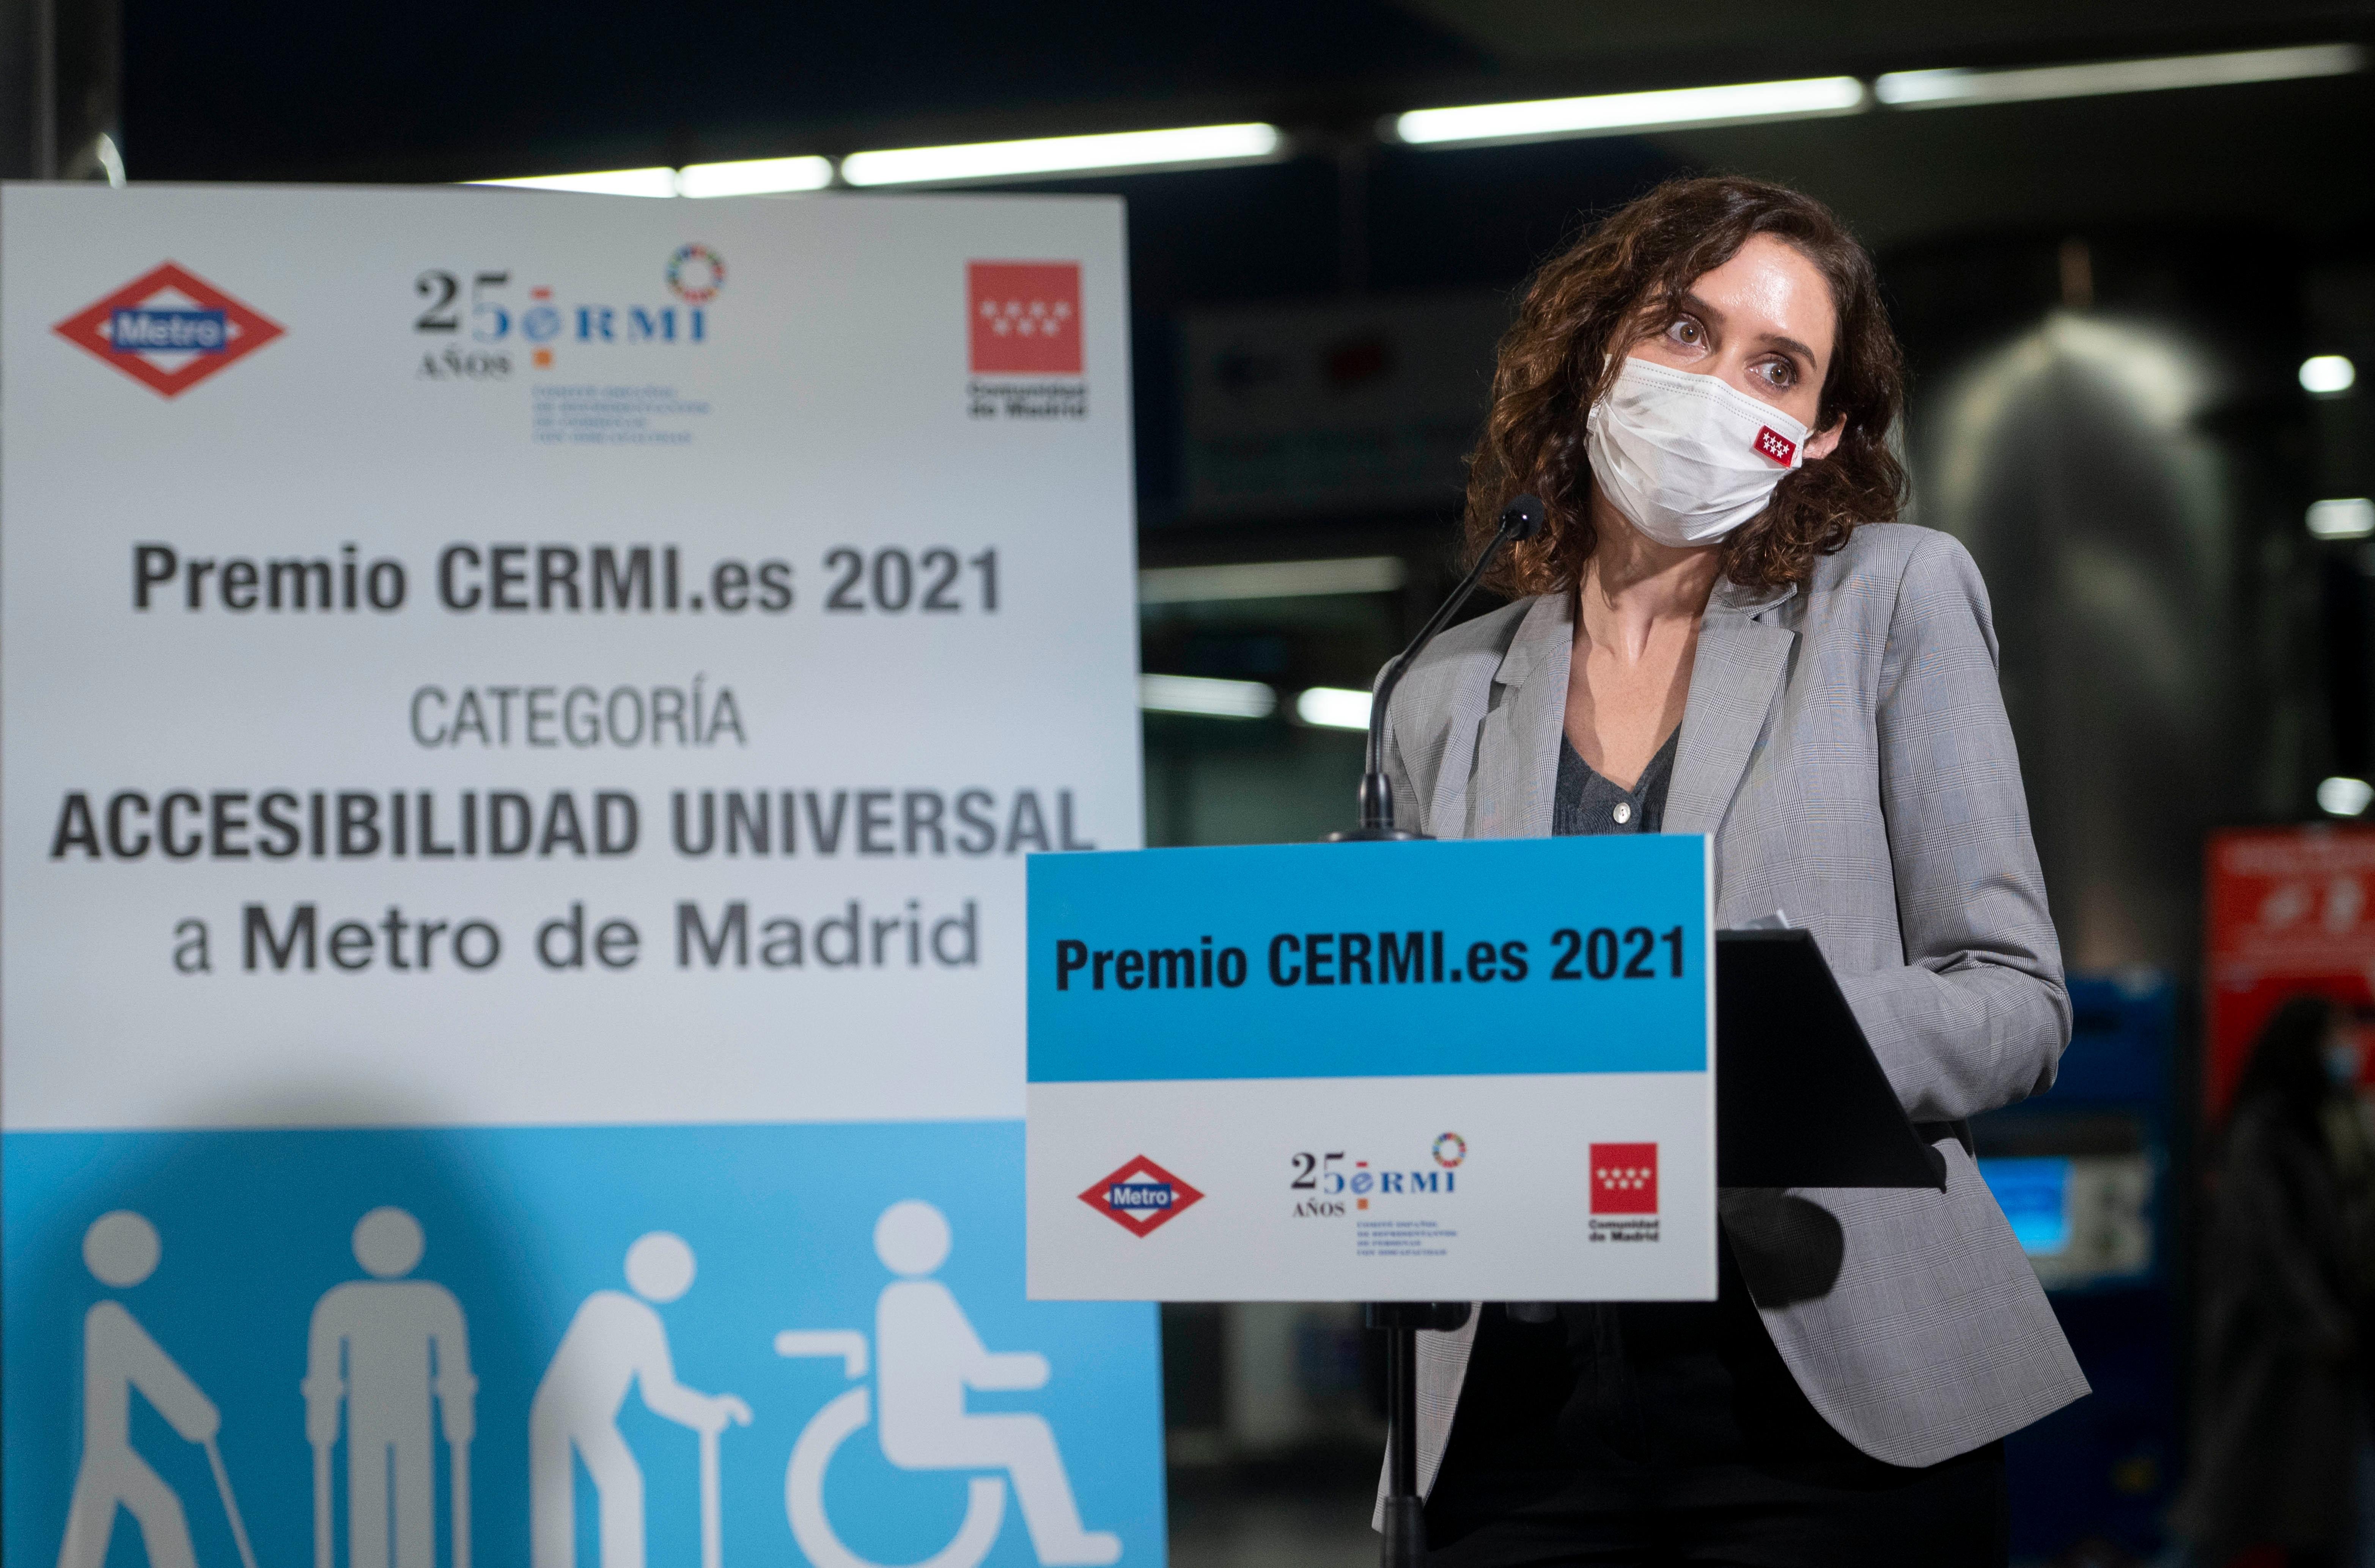 La presidenta de la Comunidad de Madrid, Isabel Díaz Ayuso, interviene en el acto en que ha recibido el Premio CERMI.ES 2021.  Alberto Ortega / Europa Press